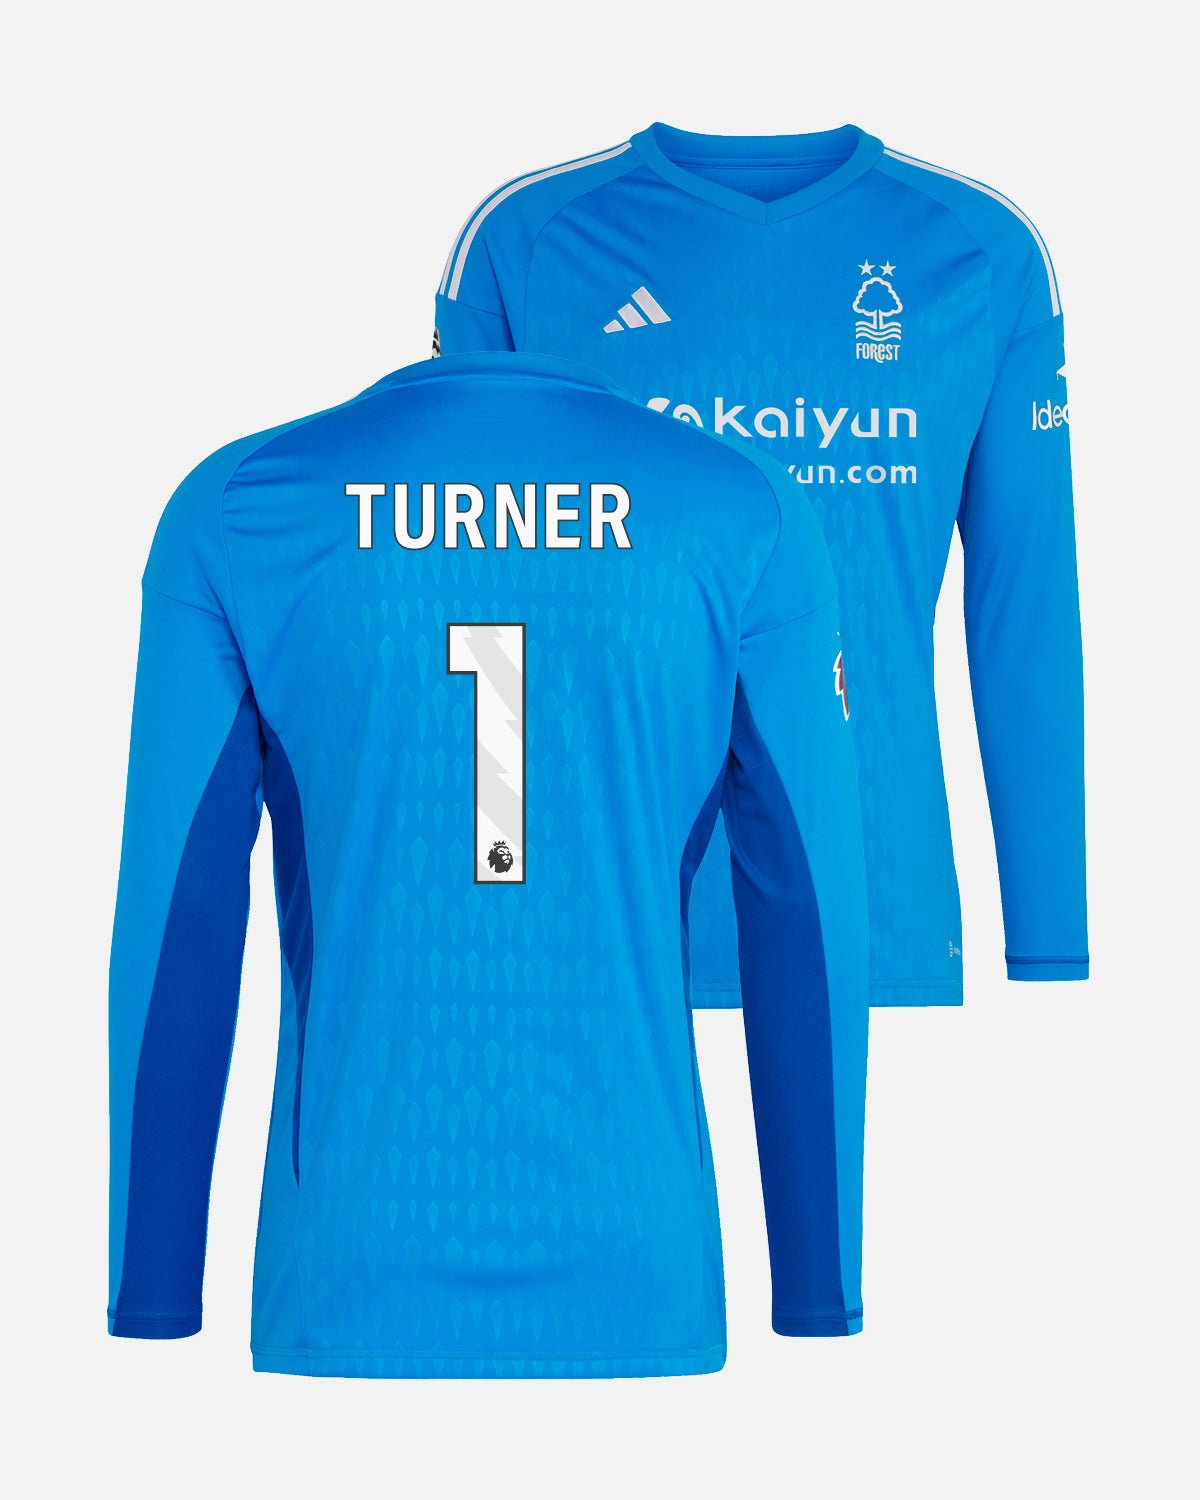 NFFC Blue Goalkeeper Shirt 23-24 - Turner 1 - Nottingham Forest FC